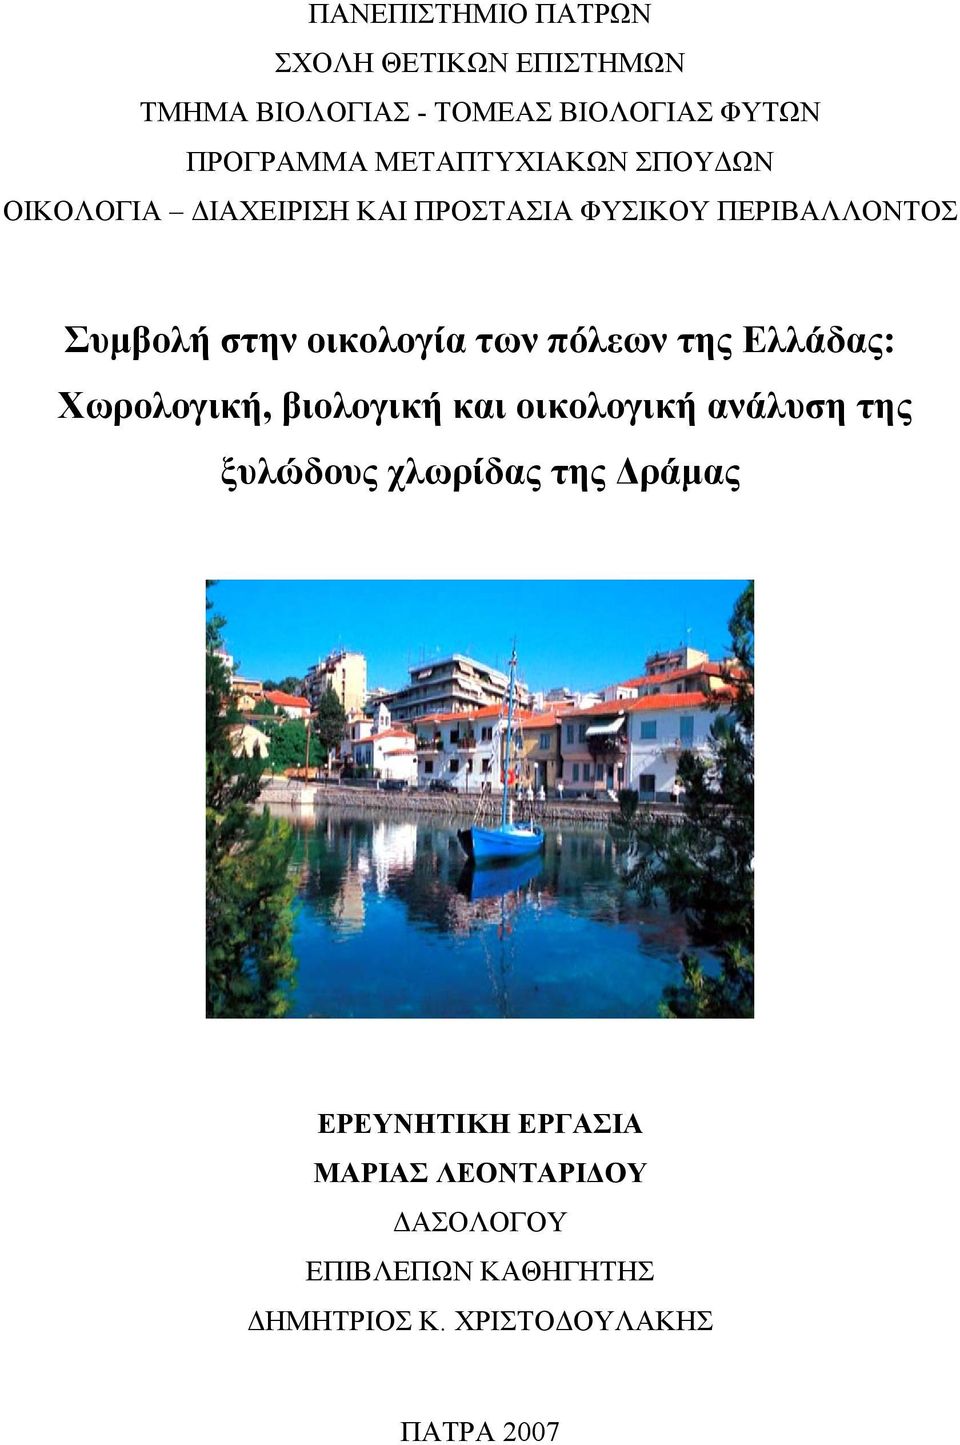 των πόλεων της Ελλάδας: Χωρολογική, βιολογική και οικολογική ανάλυση της ξυλώδους χλωρίδας της Δράμας